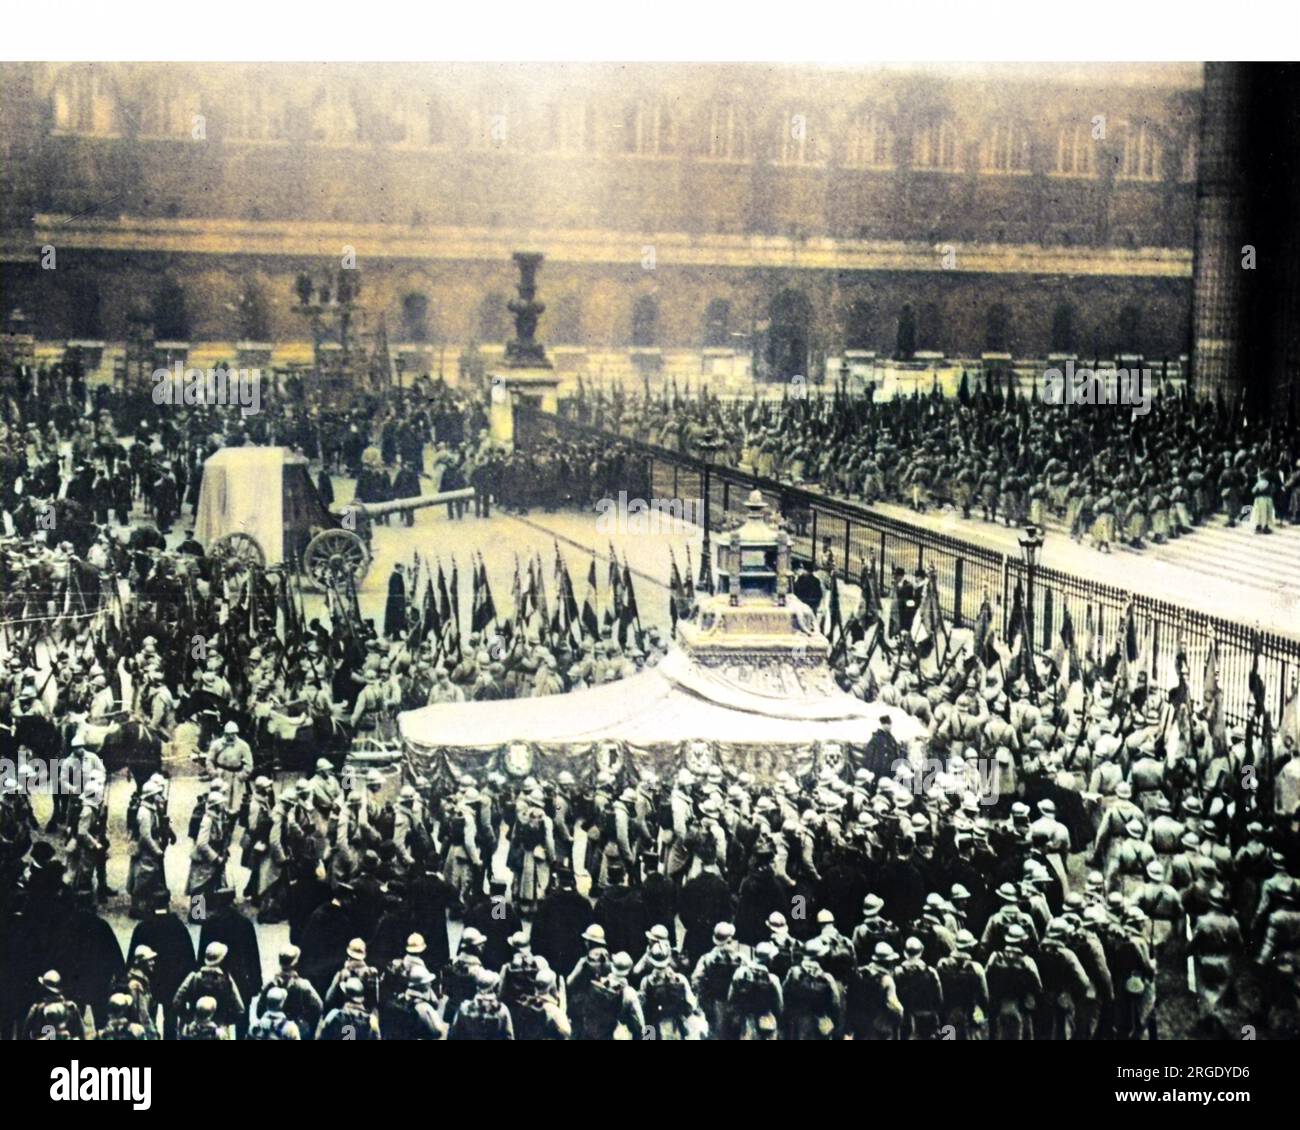 Eine besondere Zeremonie in Paris am Tag des Waffenstillstands 1920, als ein unbekannter Soldat unter dem Arc de Triomphe begraben wurde und das Herz von Gambetta (Gründer der Dritten Republik) im Pantheon platziert wurde. Stockfoto